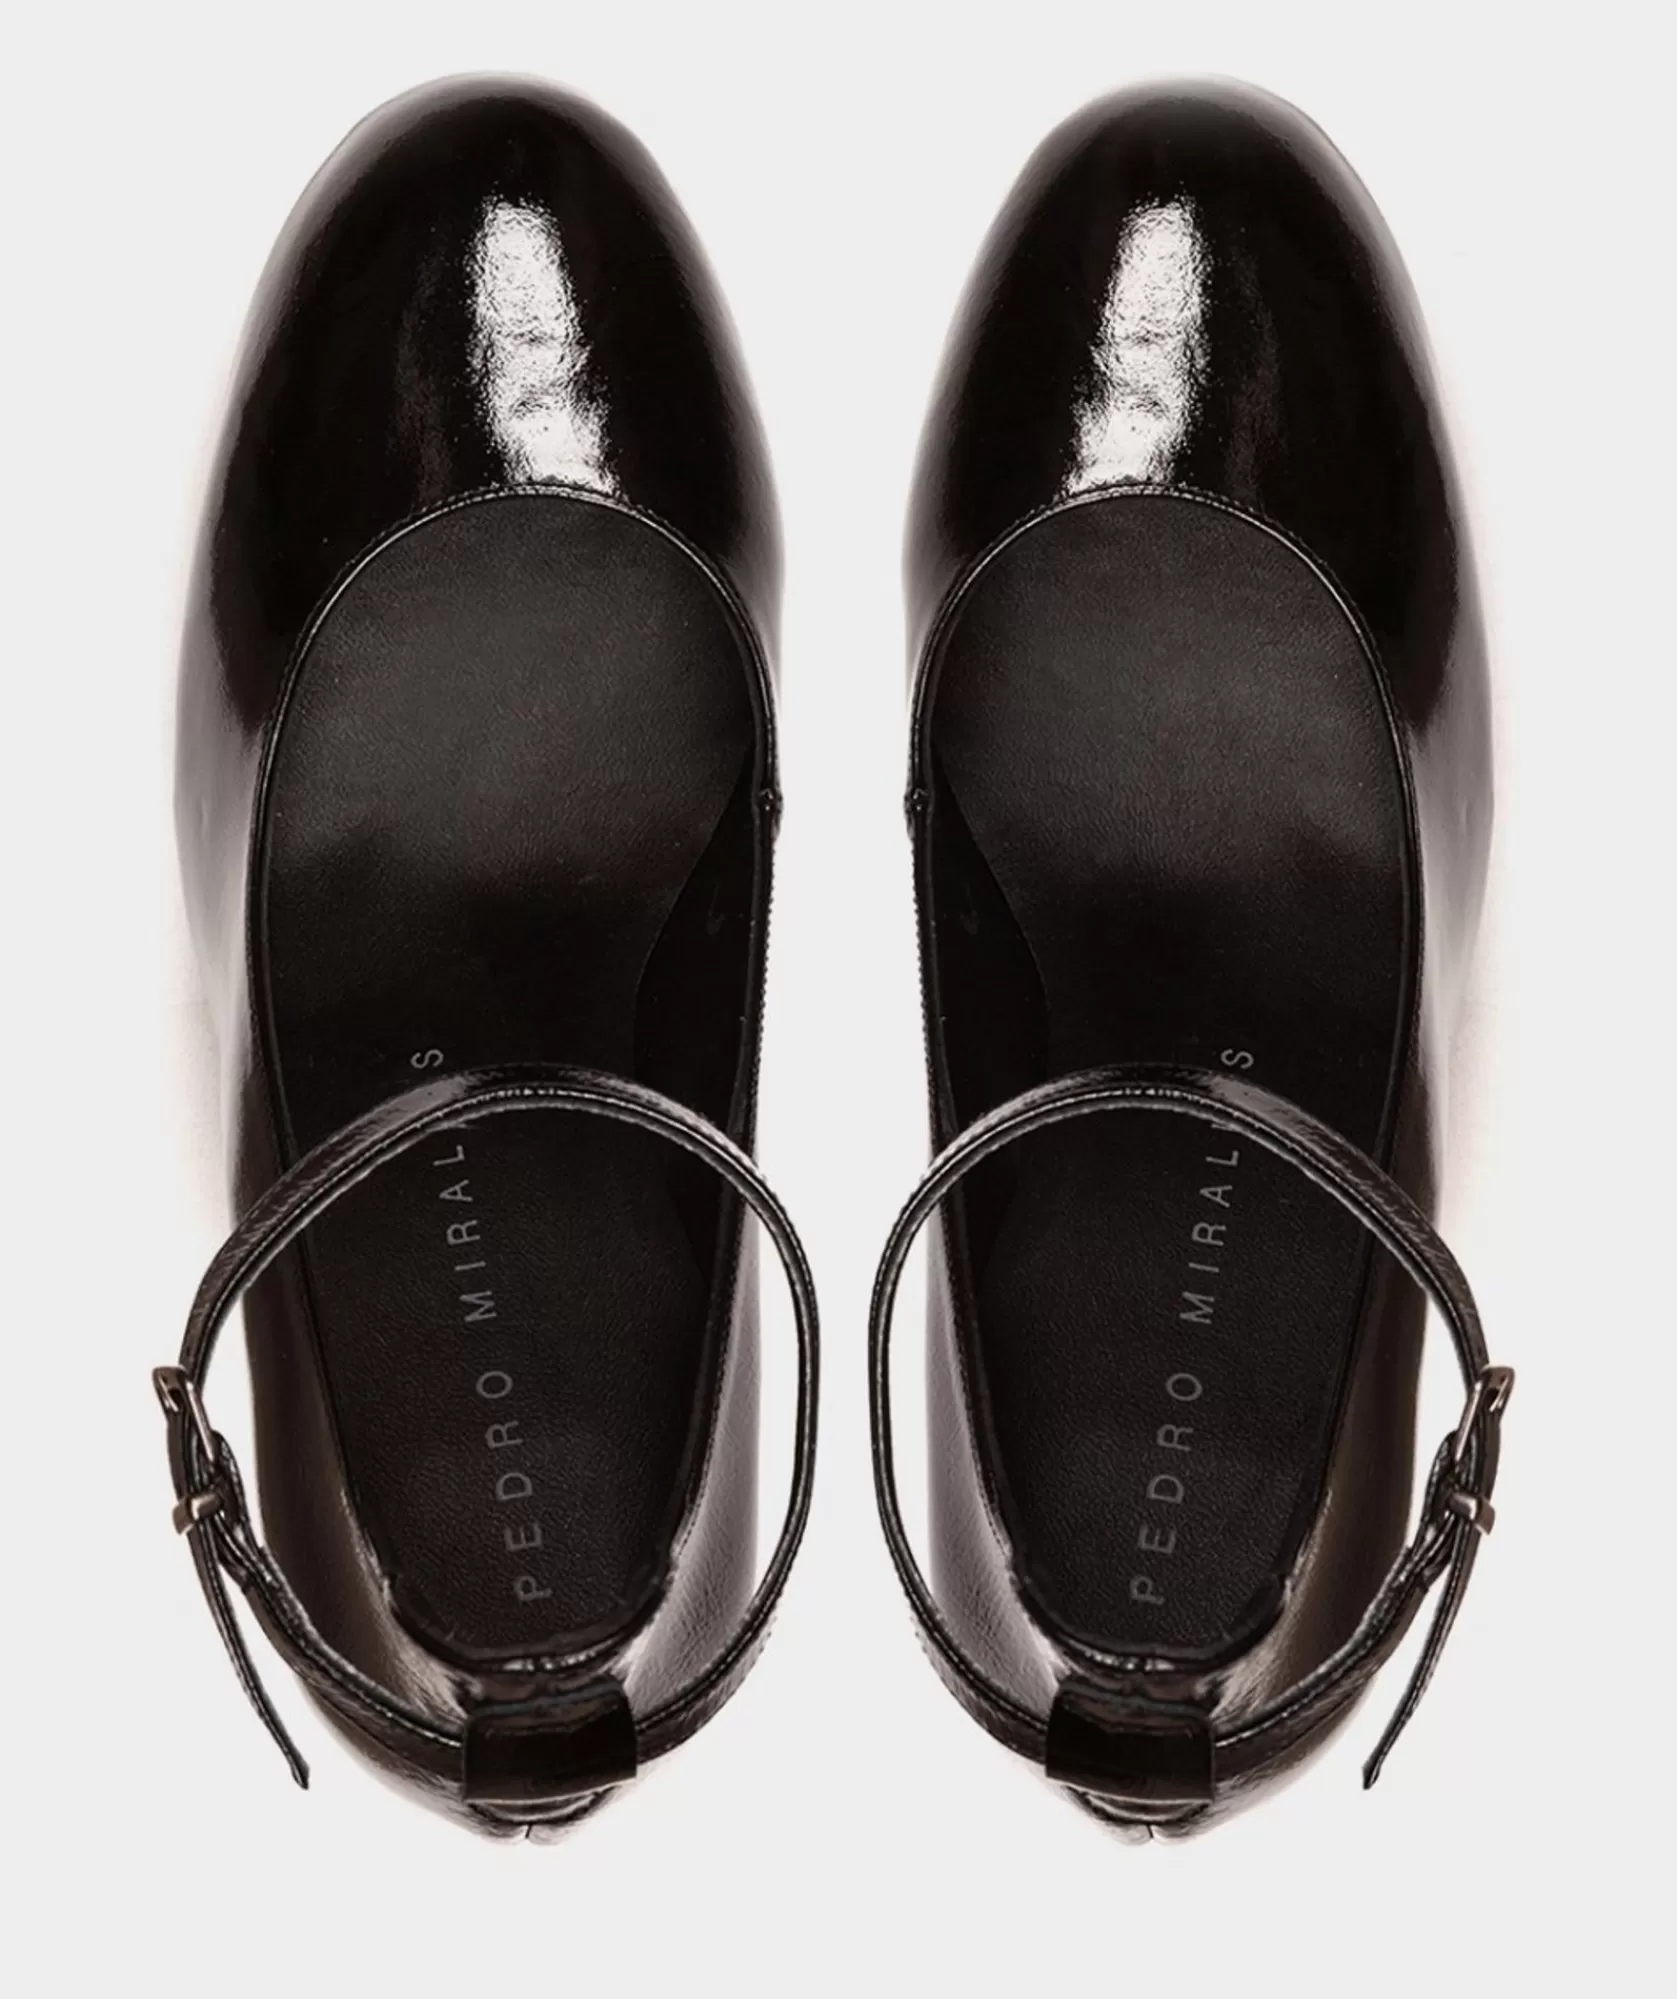 Calzado Pedro Miralles Zapatos De Tacon Con Plataforma Confeccionados En Charol De Color Negro Reflex Negro